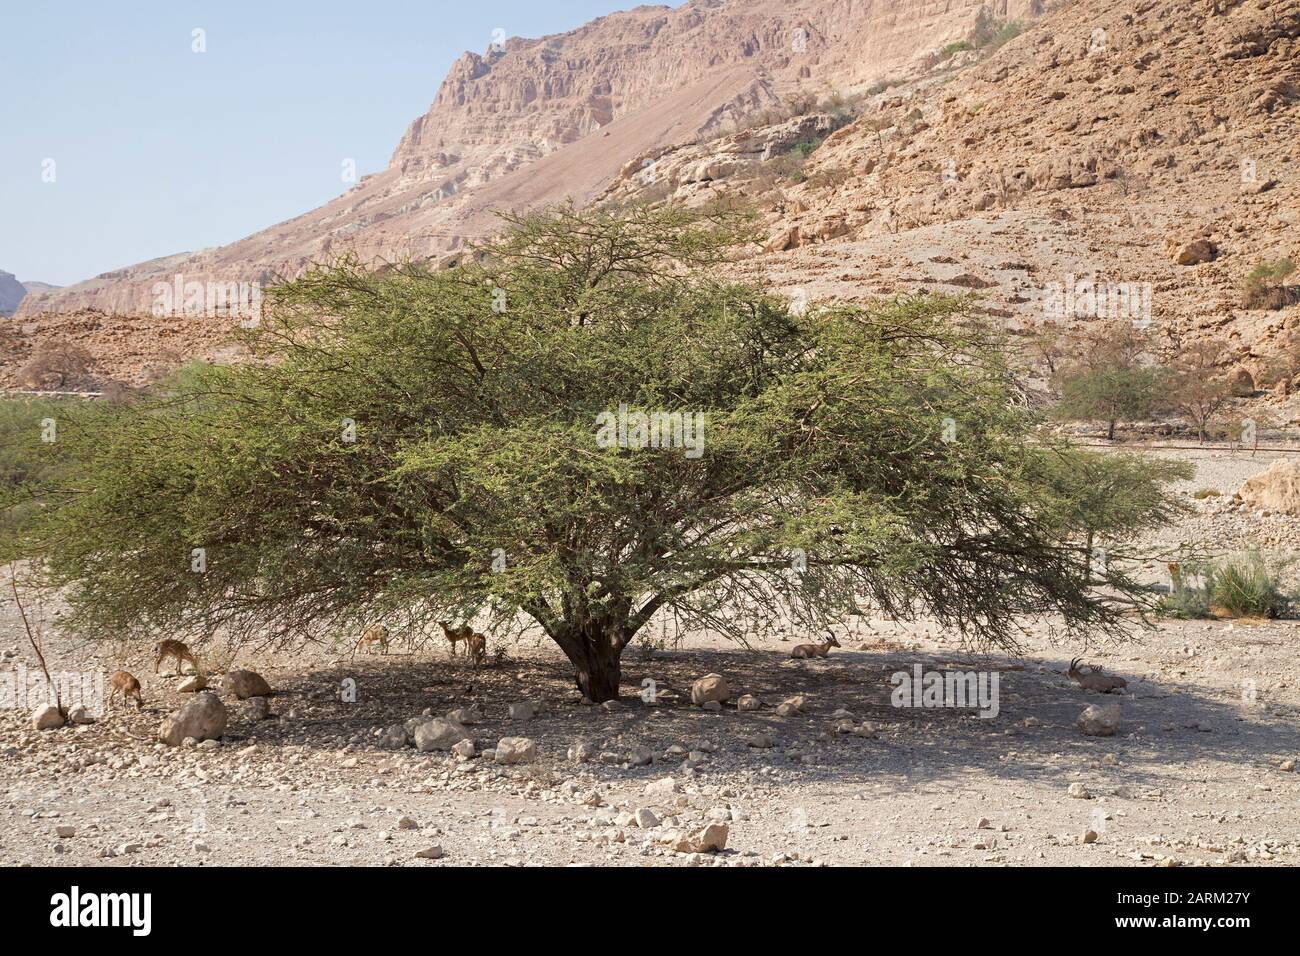 Nubische Steinbock-Herde, die sich im Schatten eines Akazienbaums im heißen trockenen Klima der judäischen Wüste, im Regenschatten der Berge, hütet Stockfoto